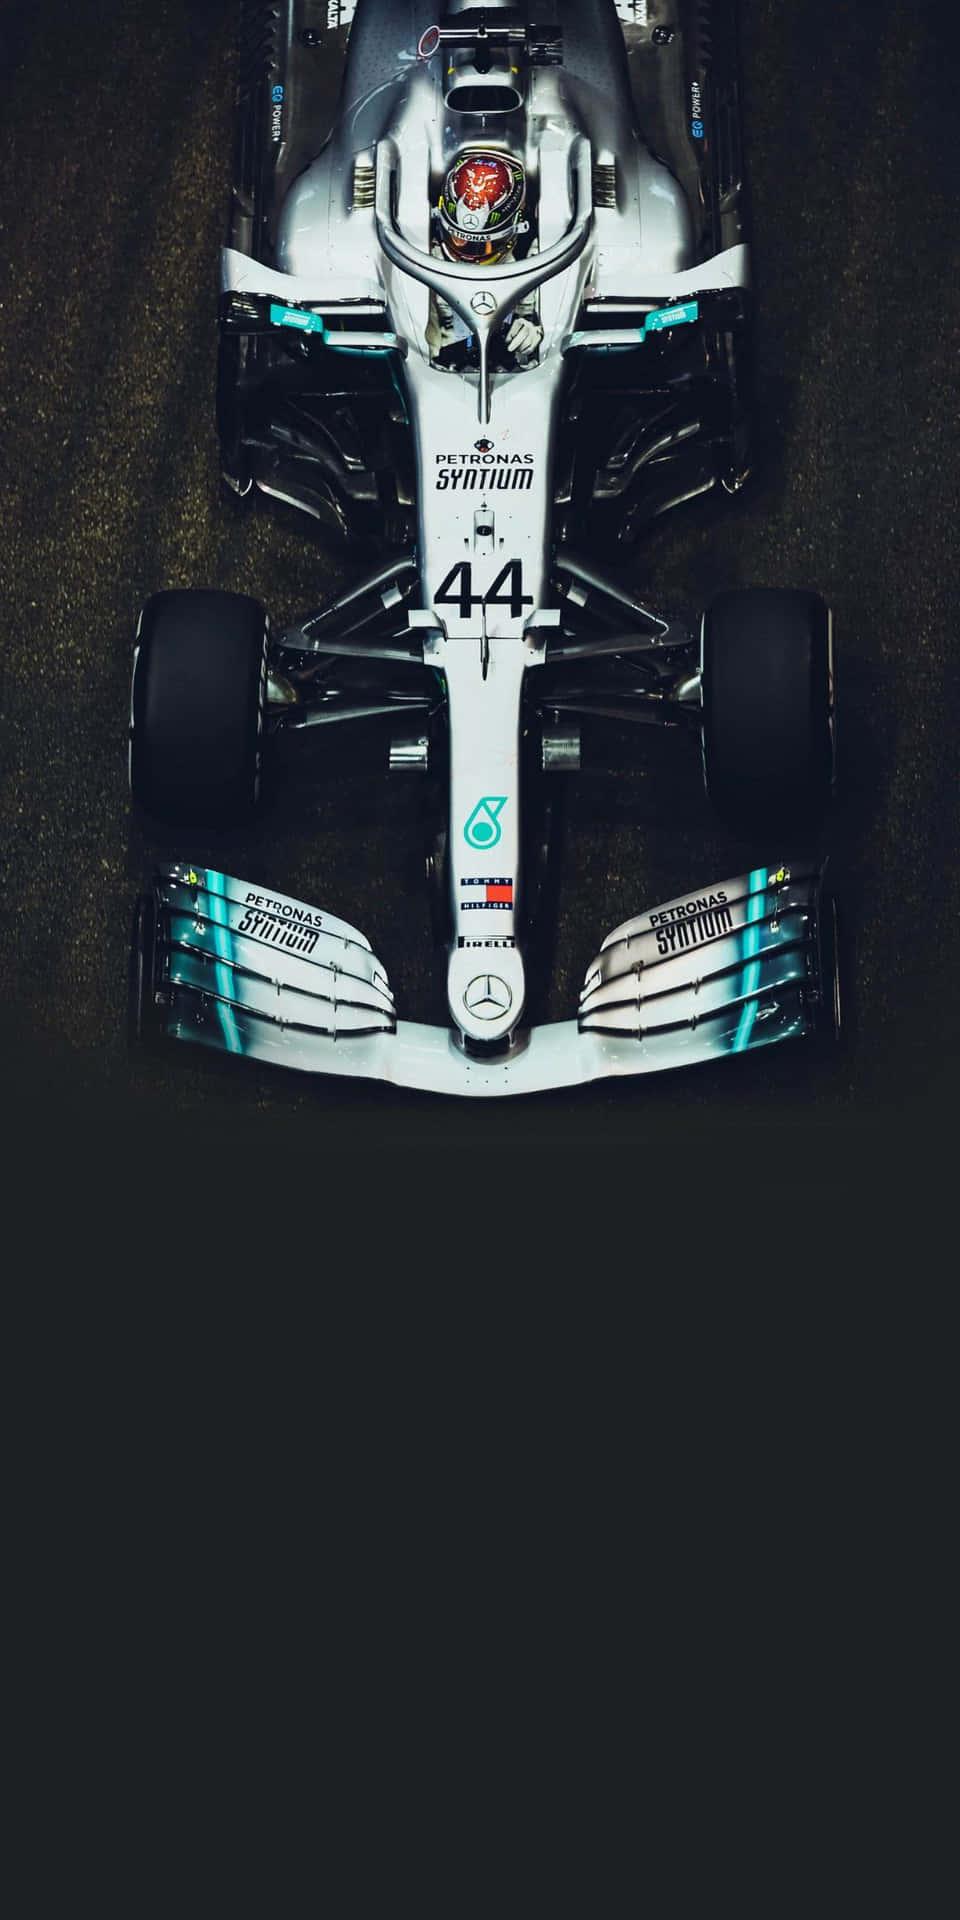 Mercedesf1-bil I Mörkret.